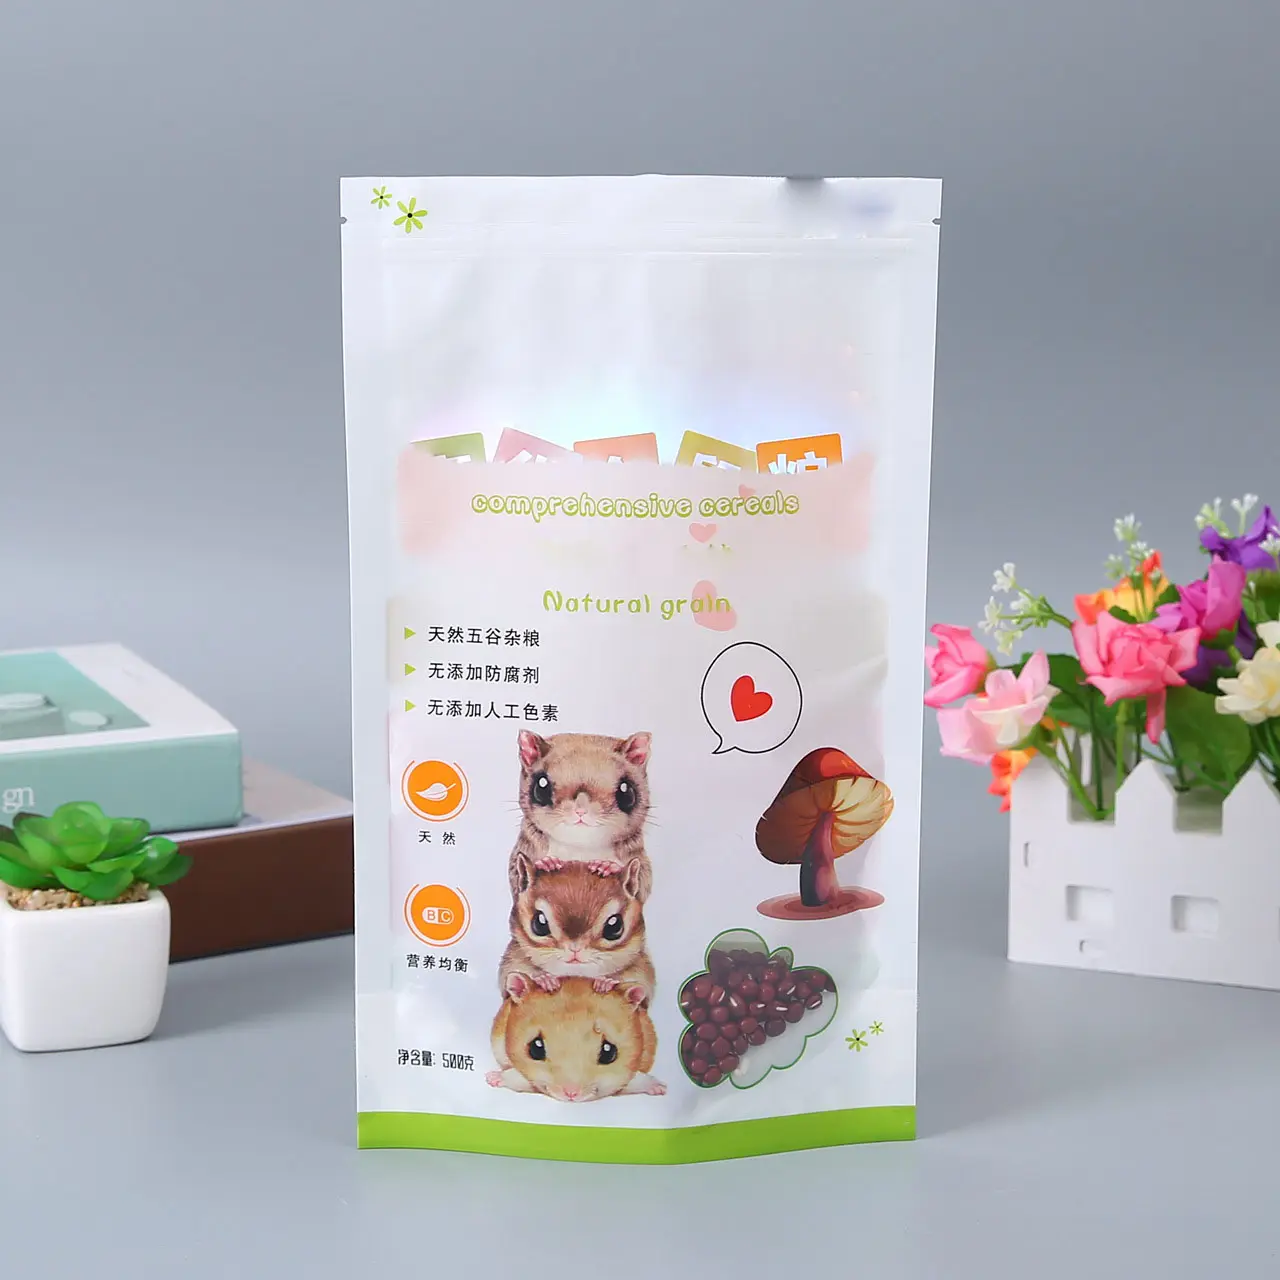 Borsa porta criceti borsa per imballaggio alimentare multiuso liofilizzata naturale pura cincillà coniglio criceto sacchetti per alimenti